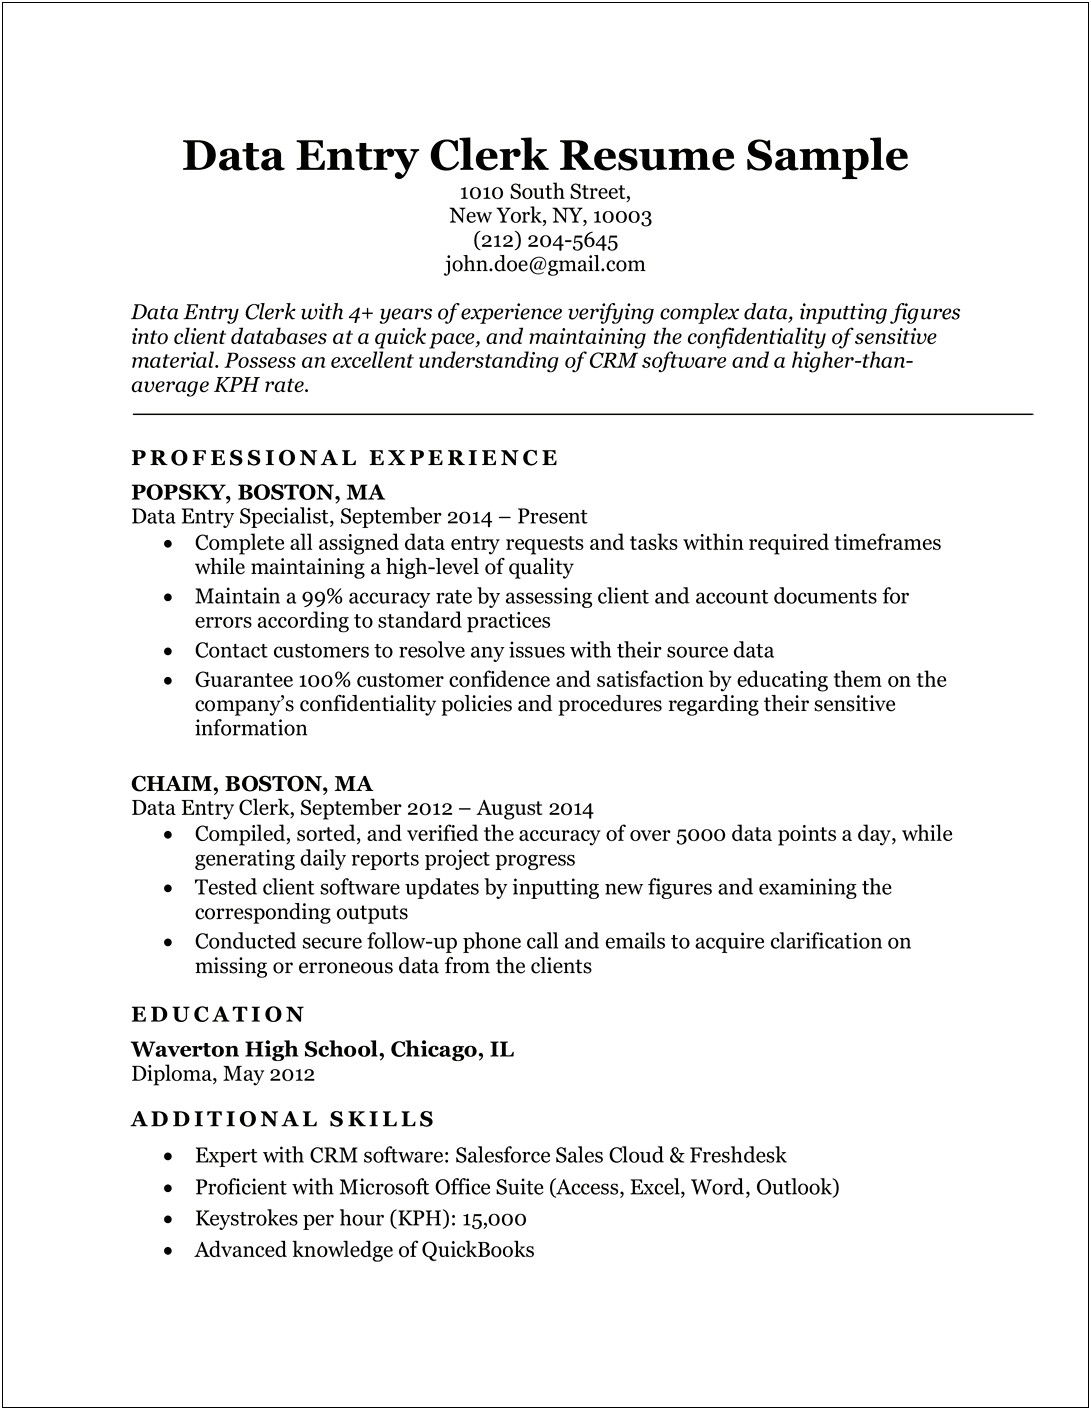 Resume Objective For City Clerk